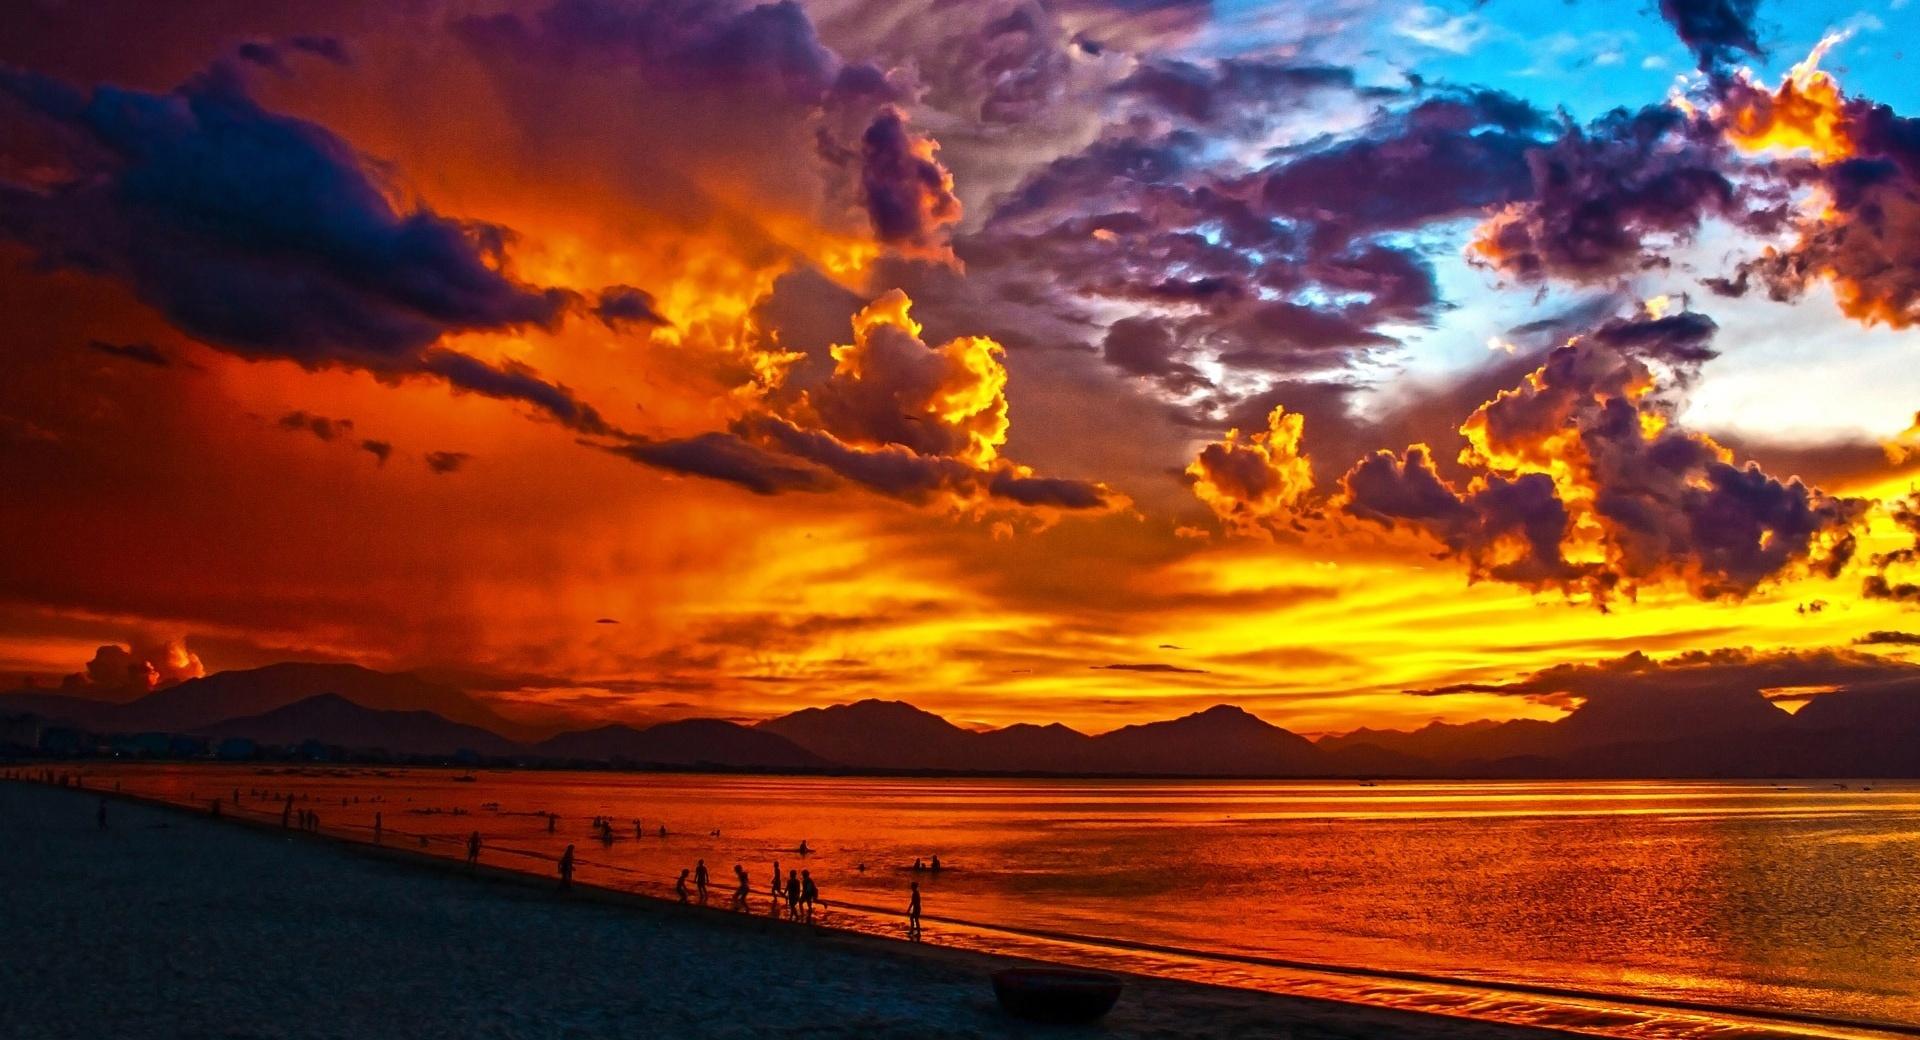 Vietnam Sunset Beach wallpapers HD quality